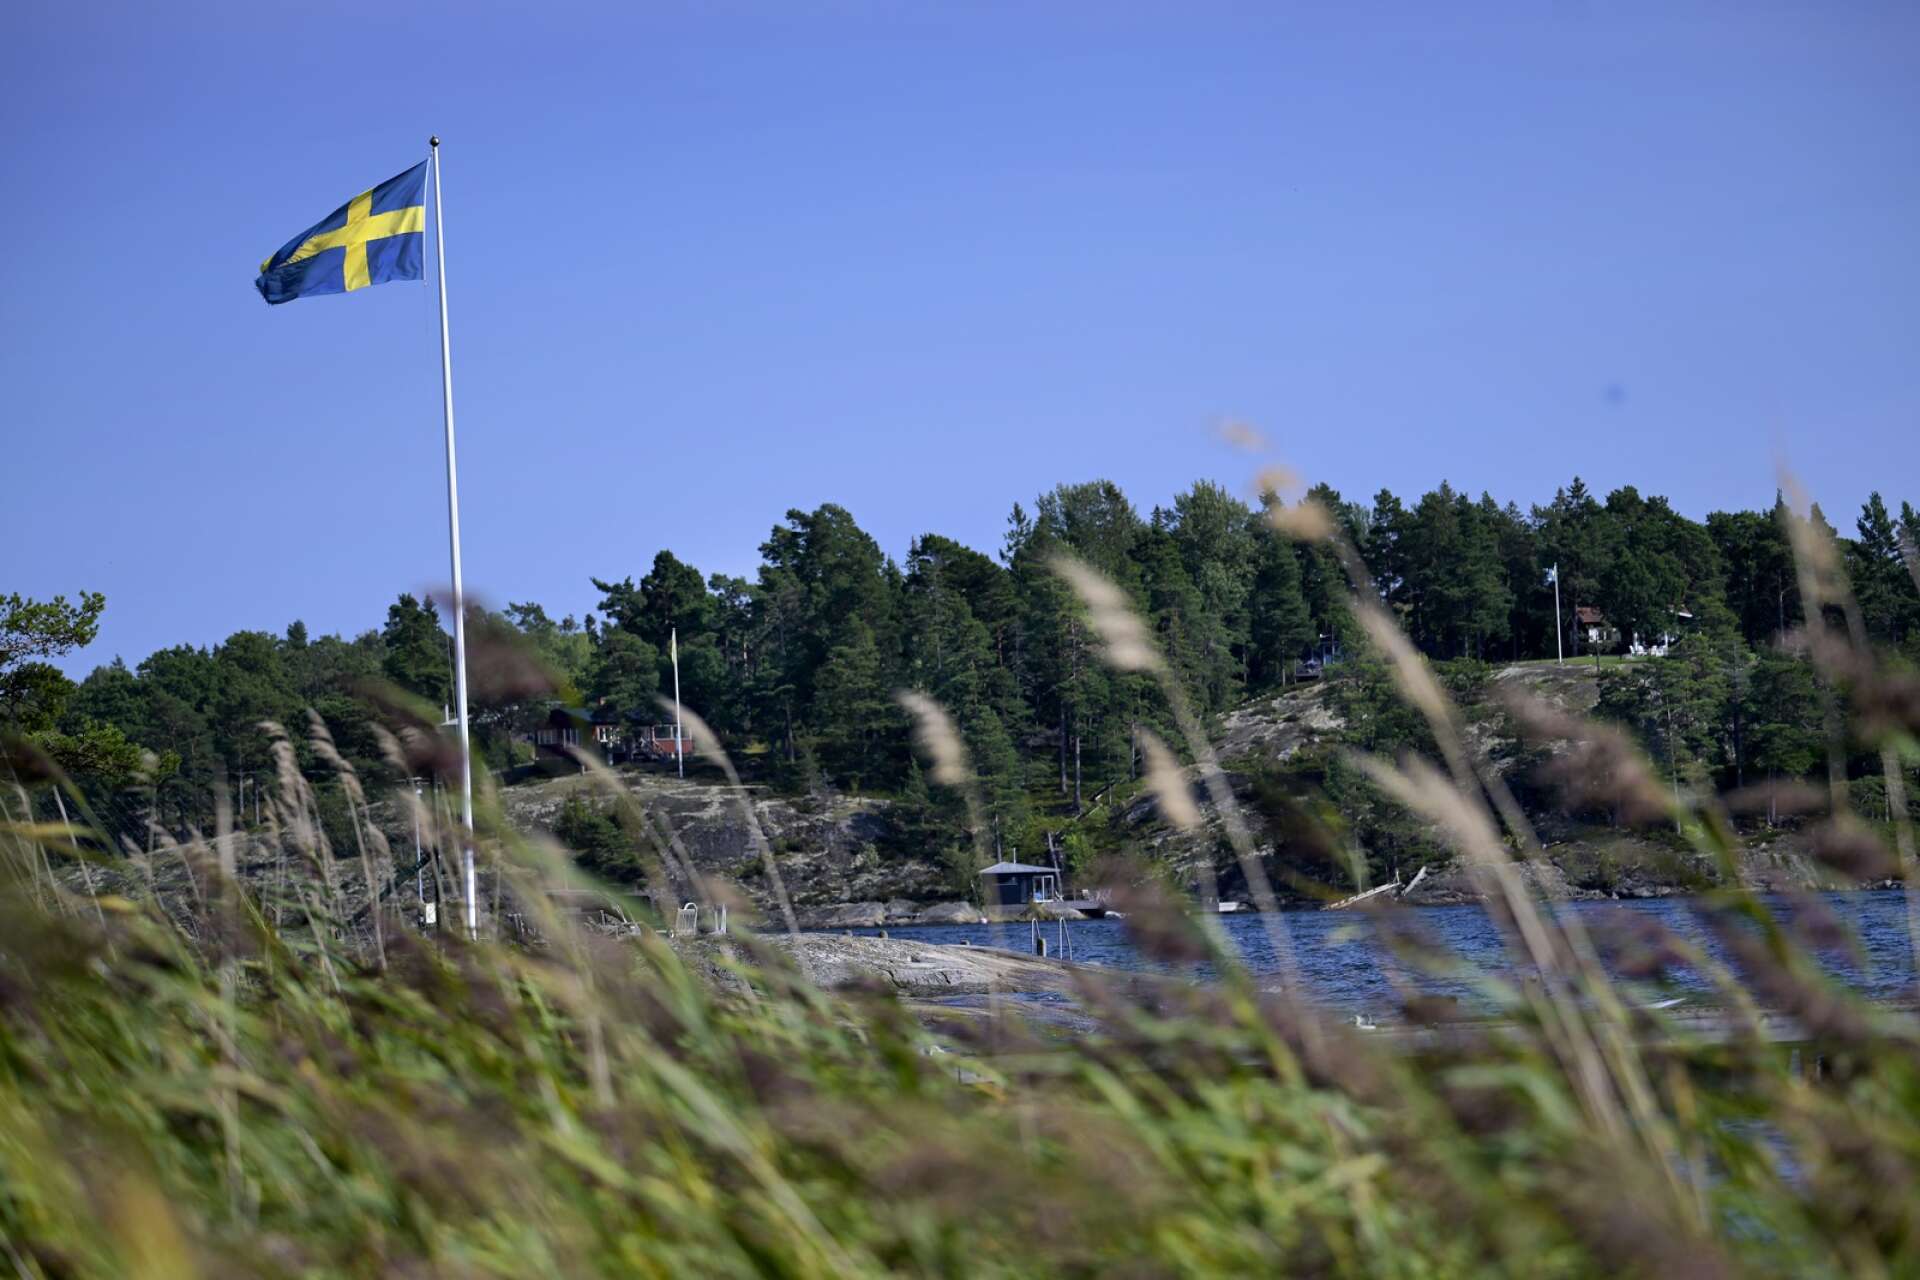 Runt om i världen har det blivit mer och mer radikalt men Sverige har tidigare känts som en stabil och sund röst i världen, oavsett om vi haft en röd eller blå regering. Så känns det inte längre, skriver insändarskribenten.